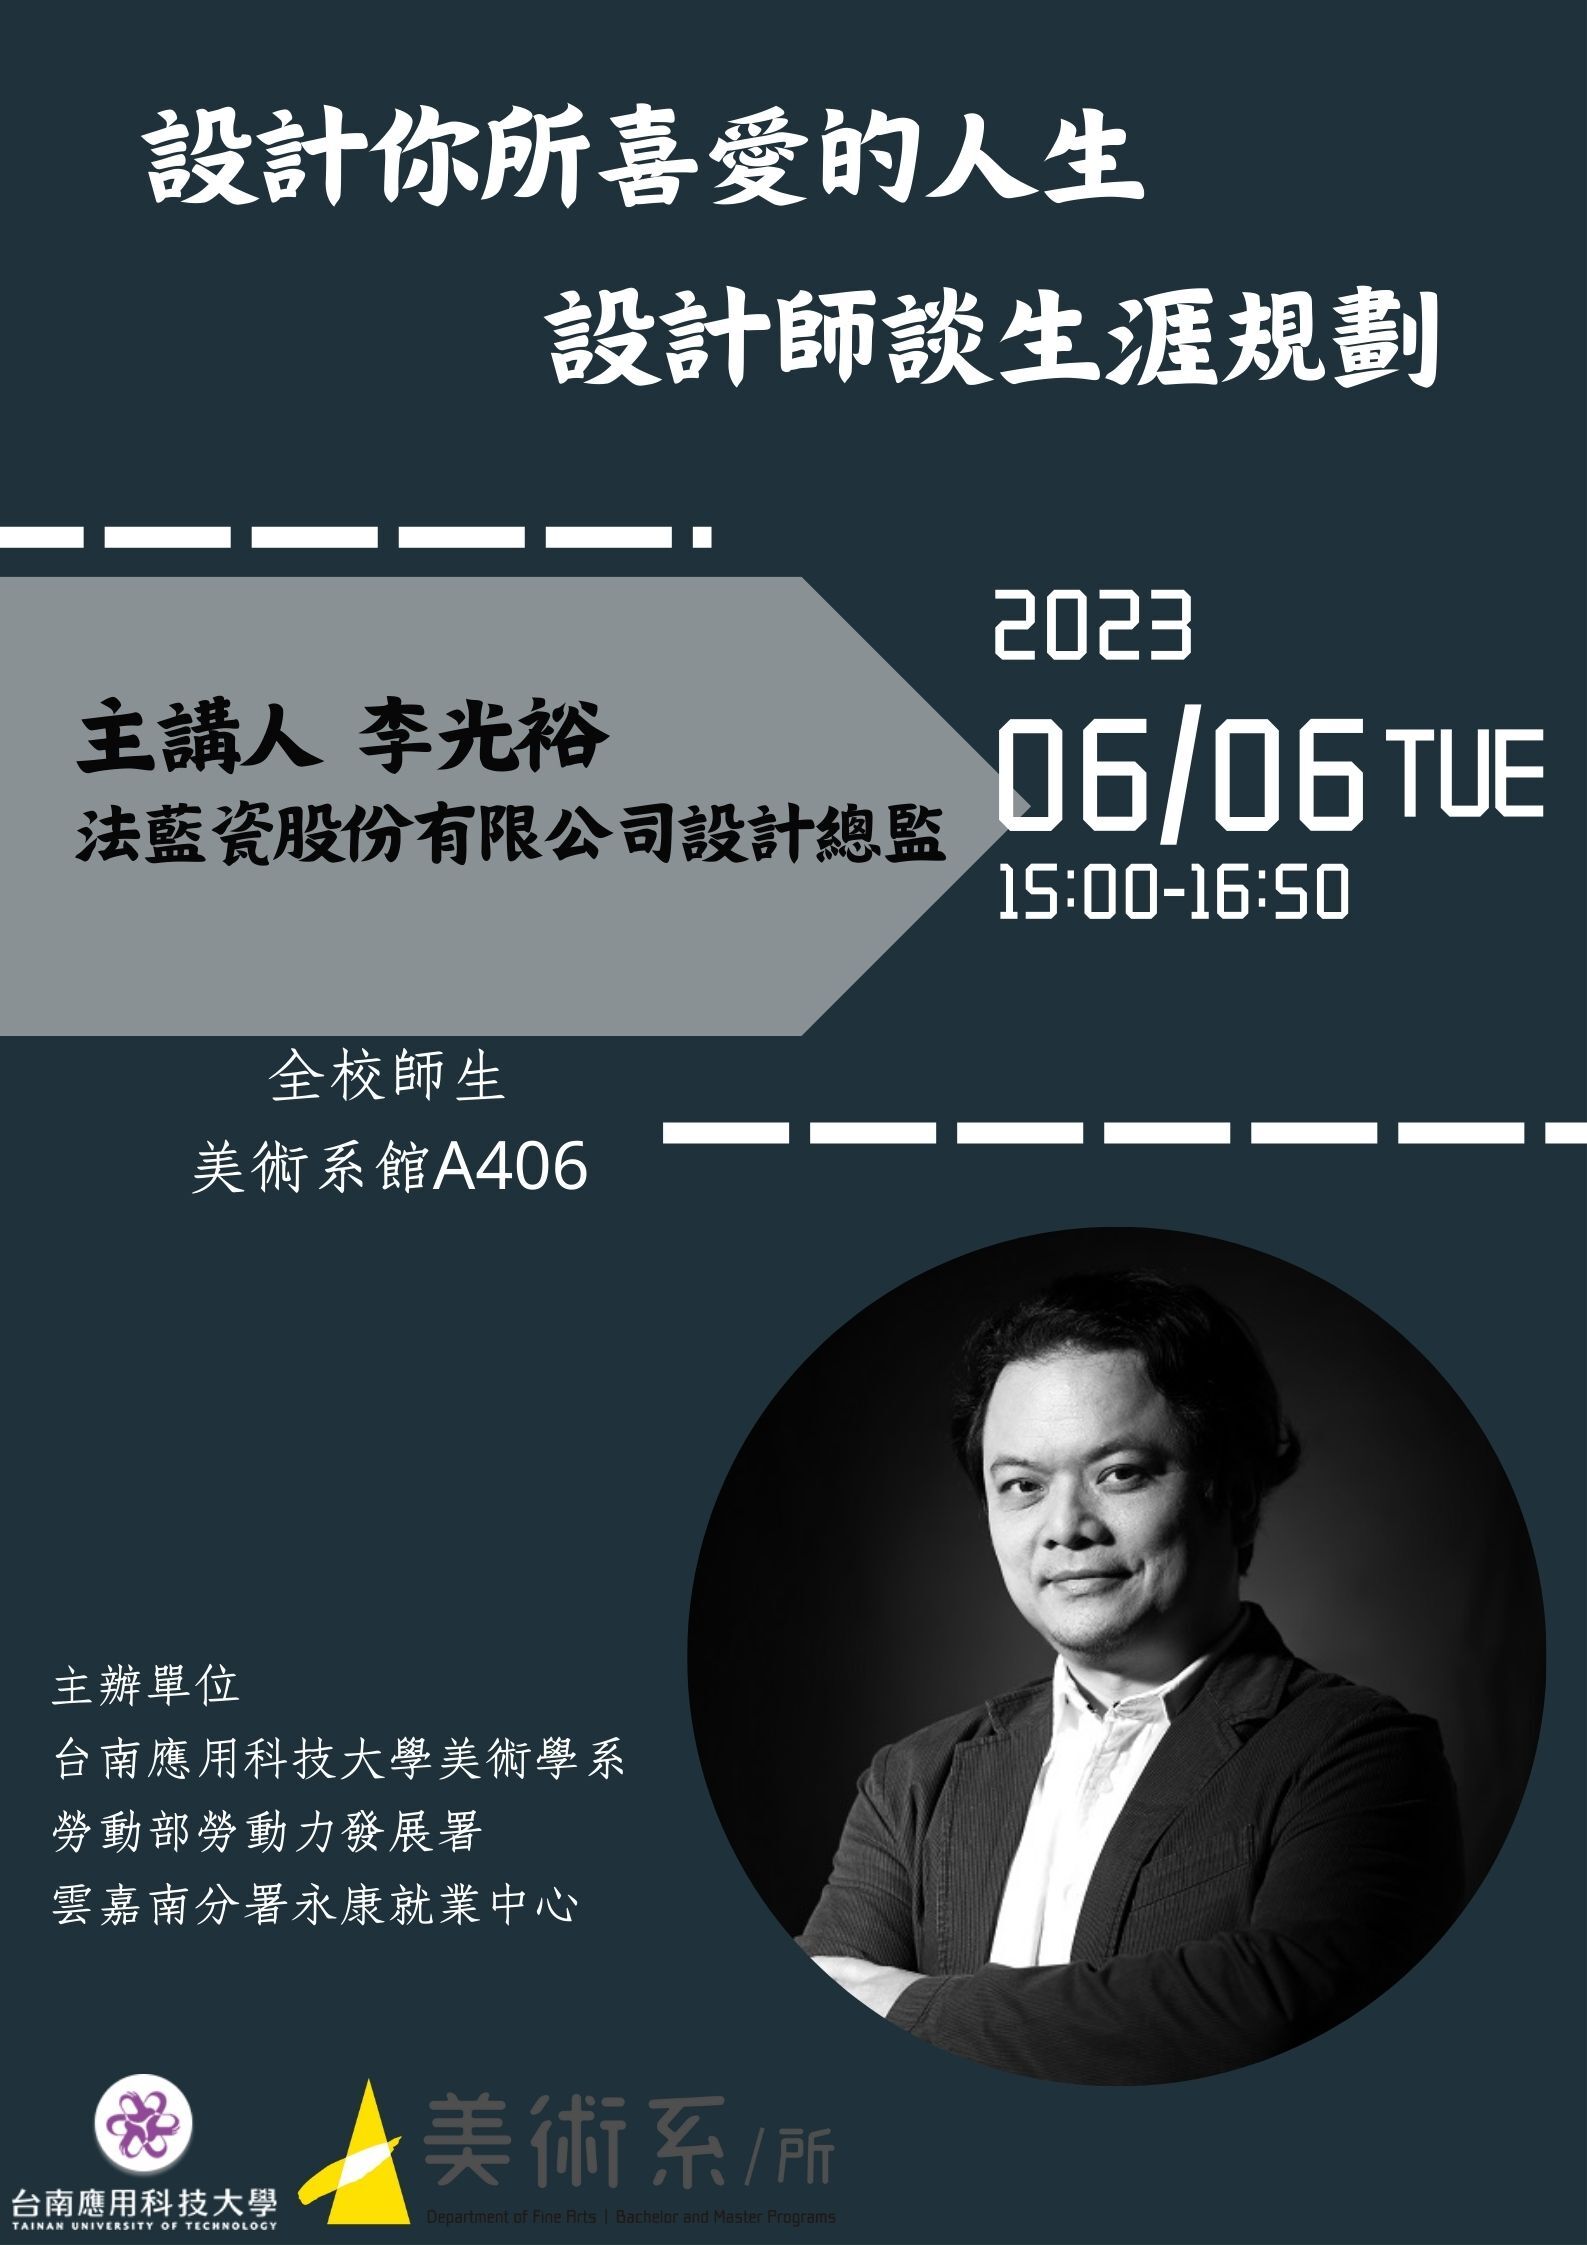 法藍瓷股份有限公司設計總監李光裕先生蒞臨南應大美術系演講